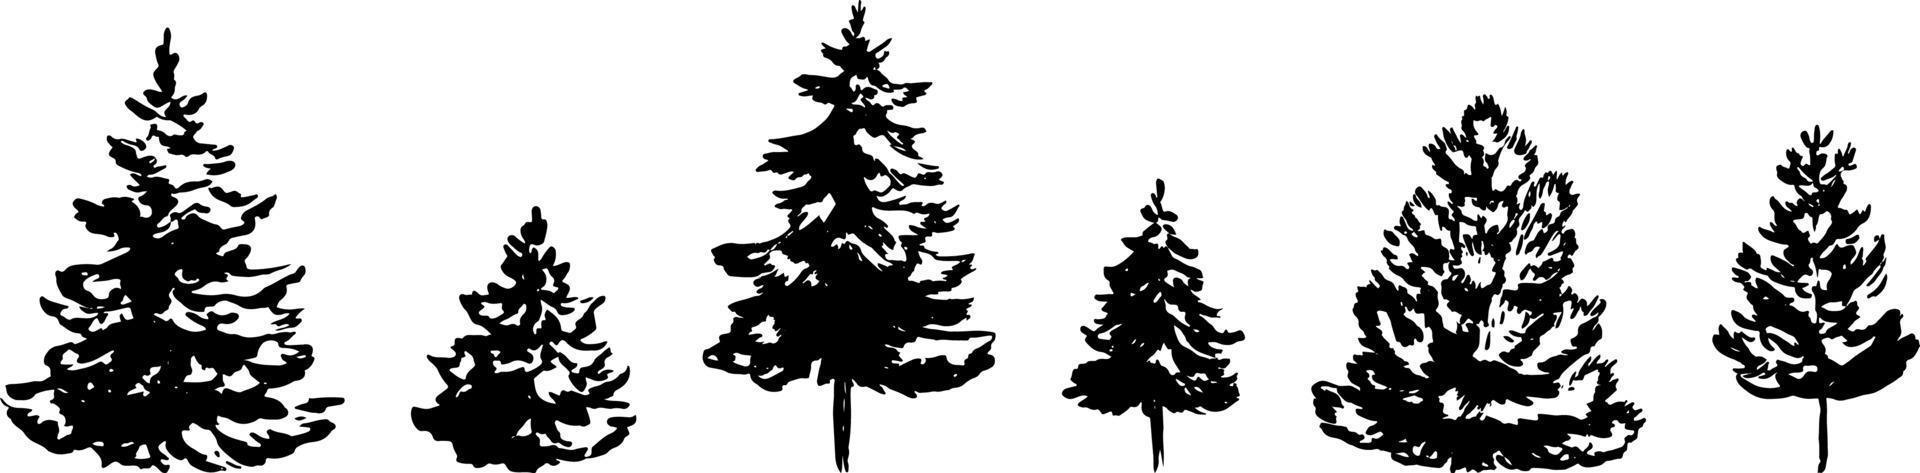 set di albero di Natale disegnato a mano isolato su priorità bassa bianca. illustrazione vettoriale in stile schizzo. elemento di design natalizio